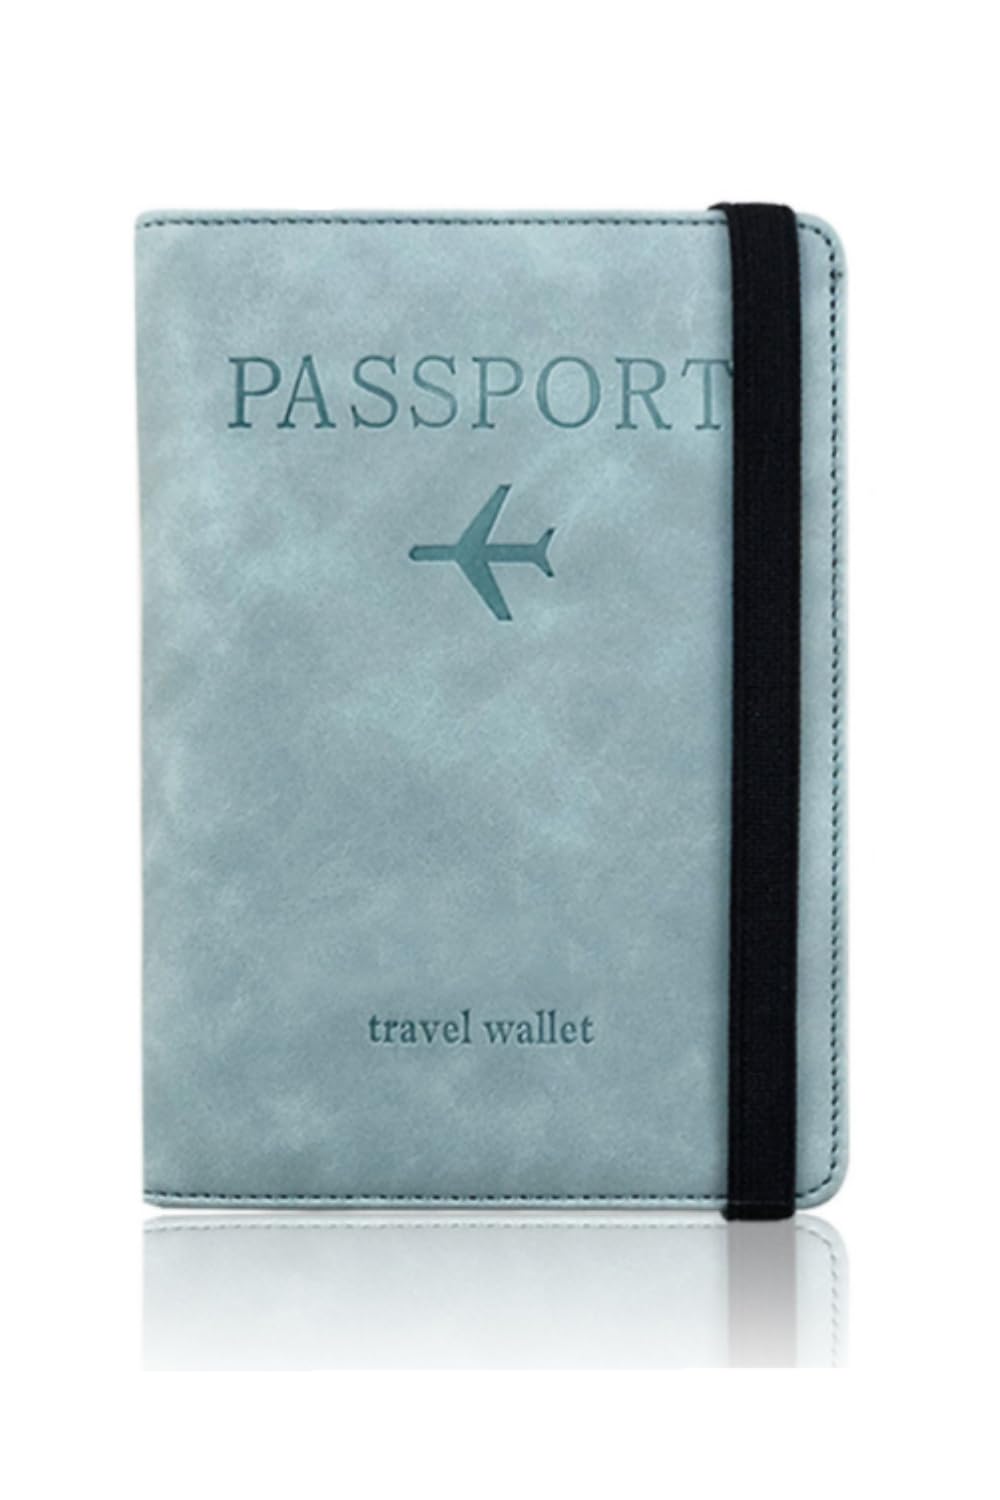 楽天Plus1マーケット楽天市場店[YFFSFDC] パスポートケース スキミング防止 パスポートカバー ホルダー トラベルウォレット パスポートカードケース 多機能収納ポケット 国内海外旅行用品 海外出張 海外旅行（ライトブルー）